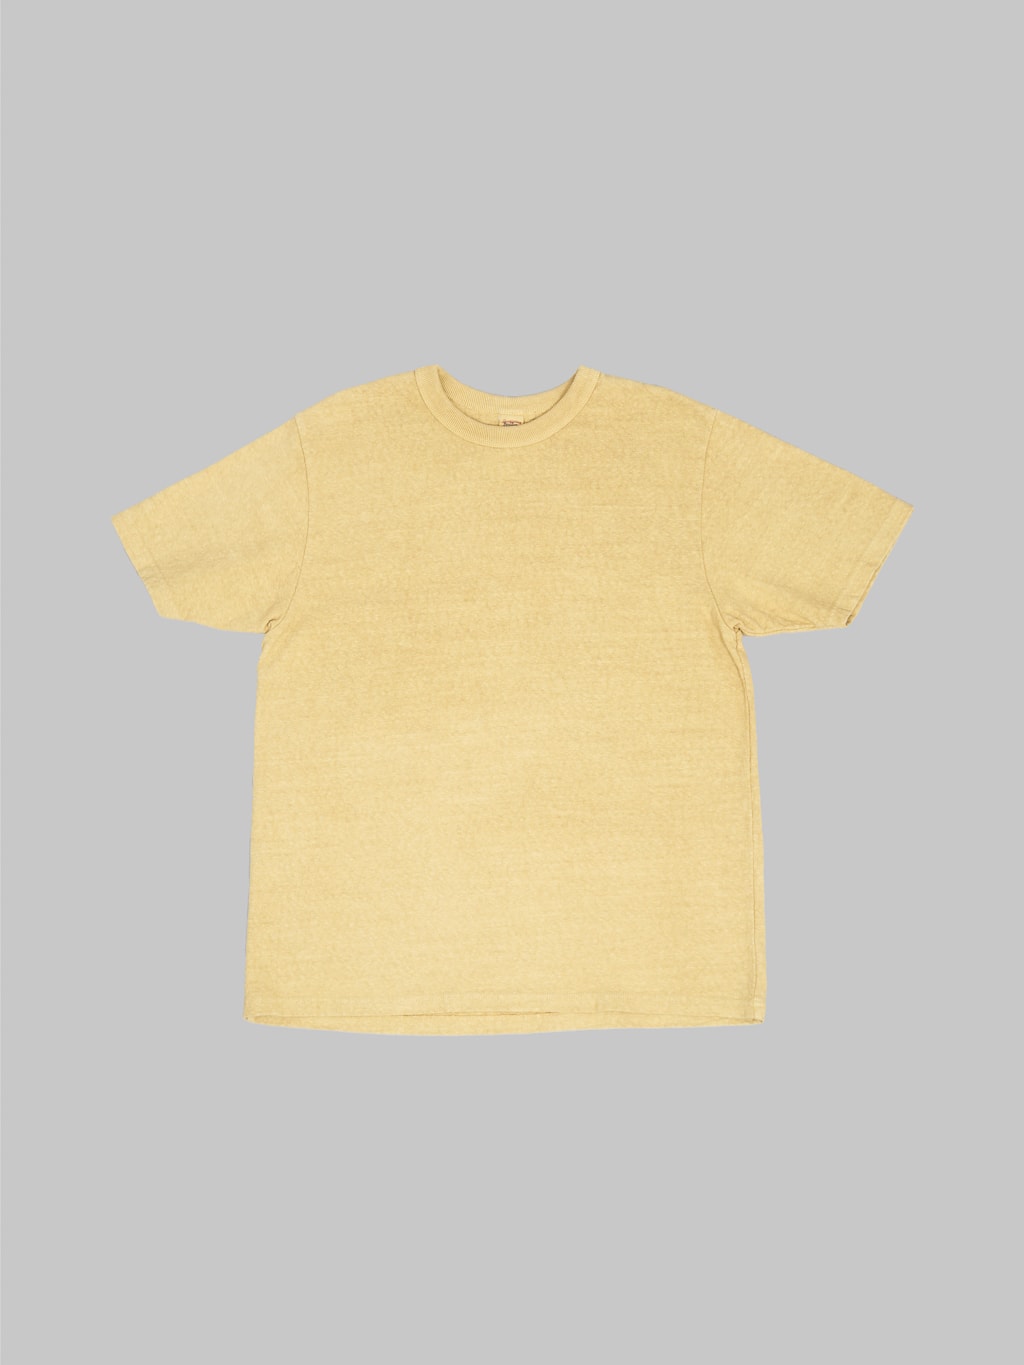 UES N8 Slub Nep Short Sleeve TShirt yellow front